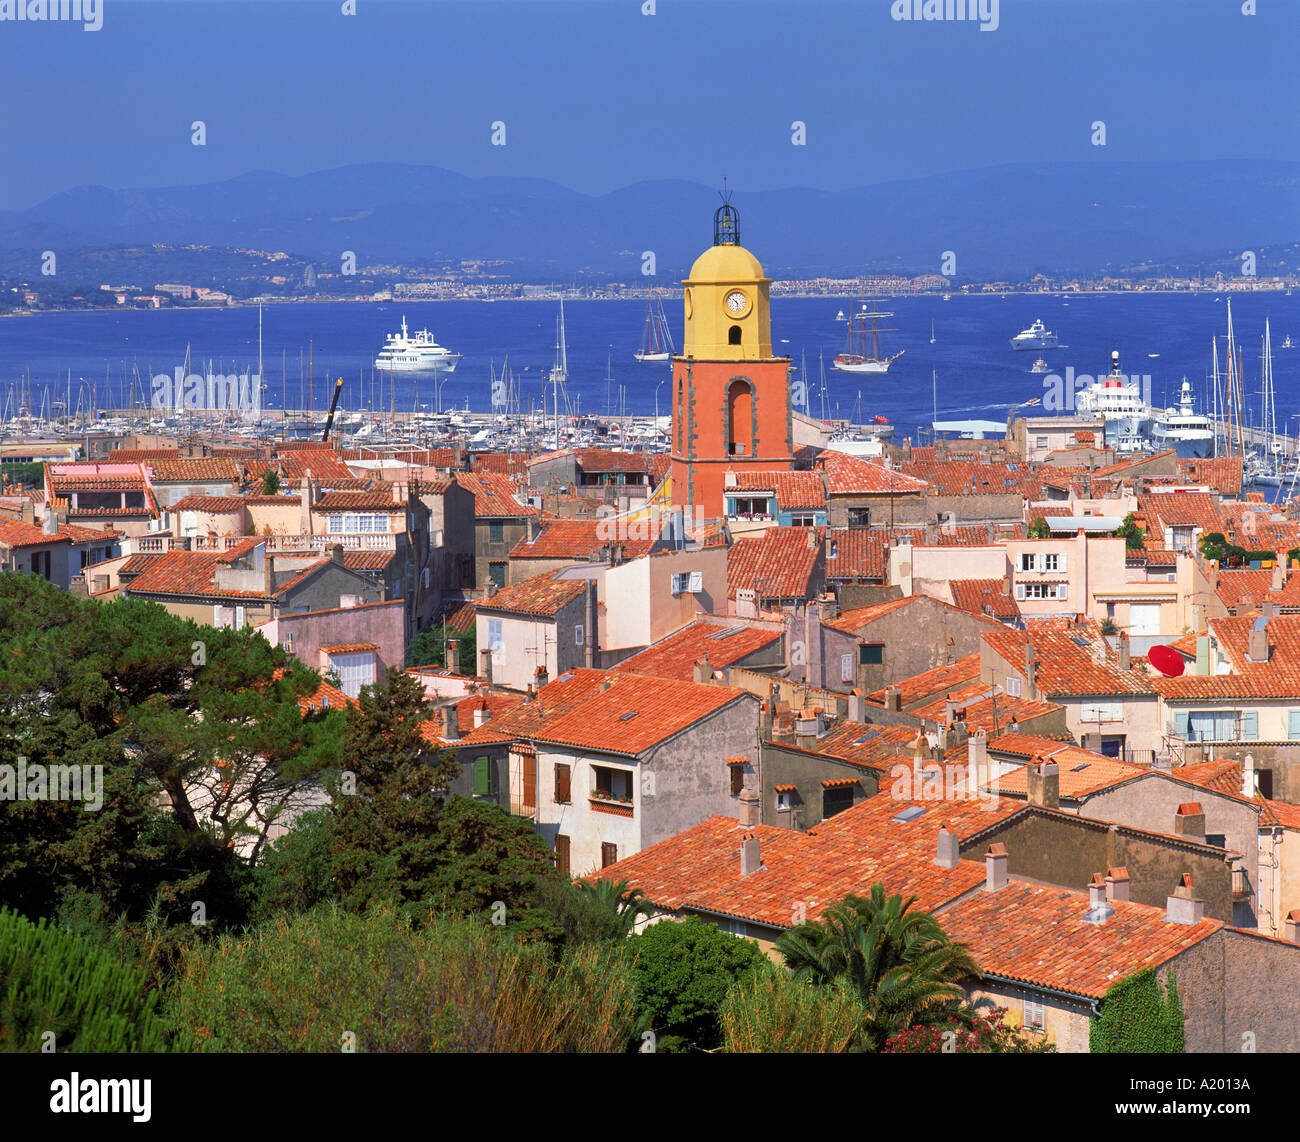 La linea dell'orizzonte della città con le navi nella baia in background a Portofino Liguria Italia G R Richardson Foto Stock